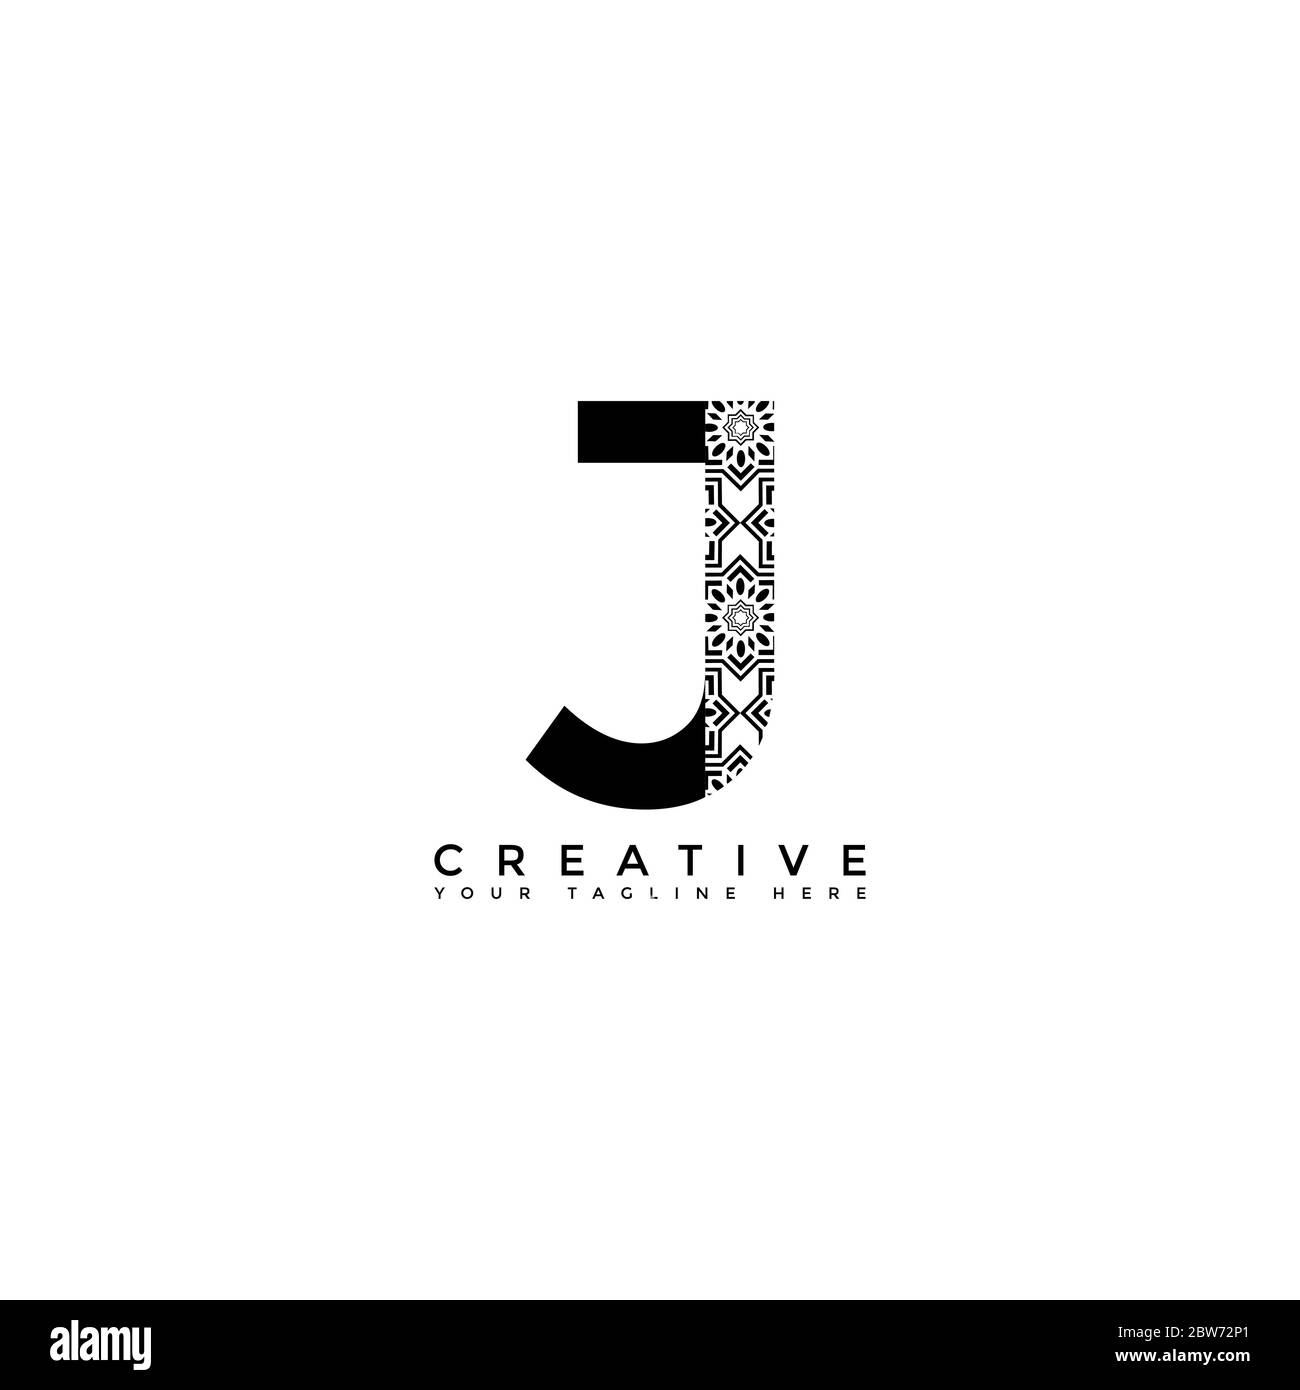 Questo è il disegno del logo della lettera J con lo stile iniziale del logo. Questo logo è adatto per aziende o altre attività creative di condivisione. Questo logo Illustrazione Vettoriale